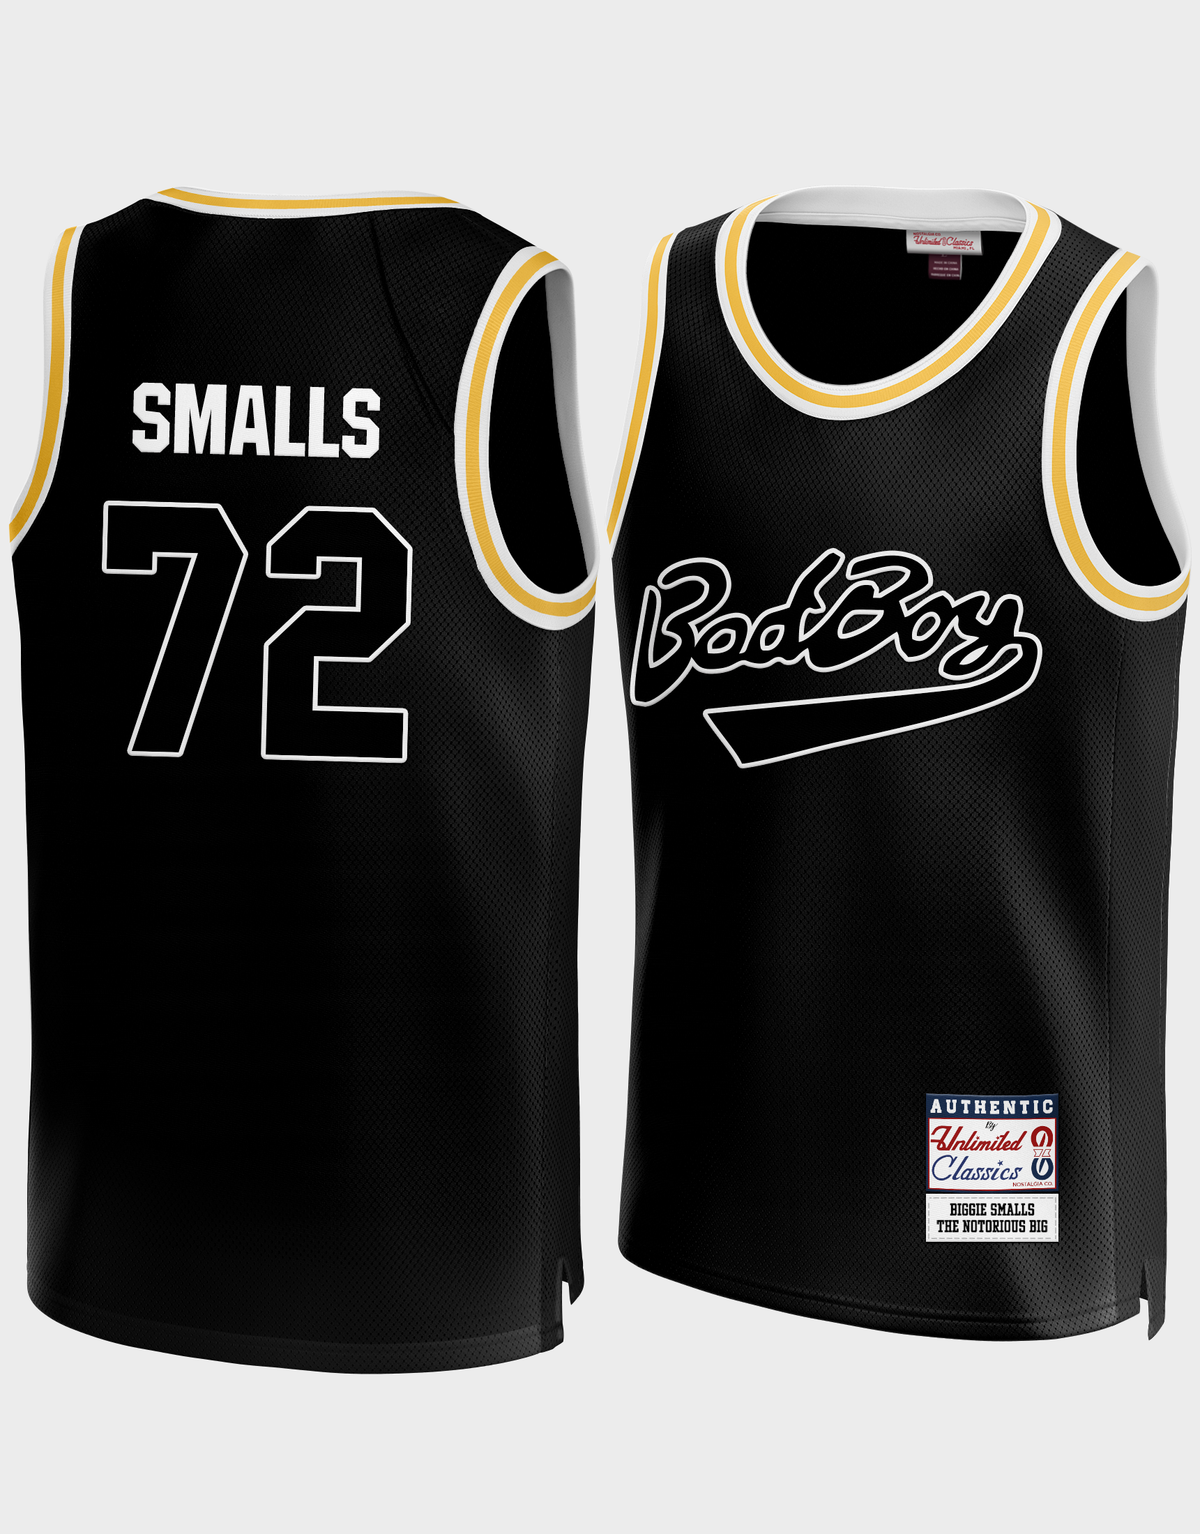 Biggie Smalls #72 Notorious Big Bad Boy Black Jersey